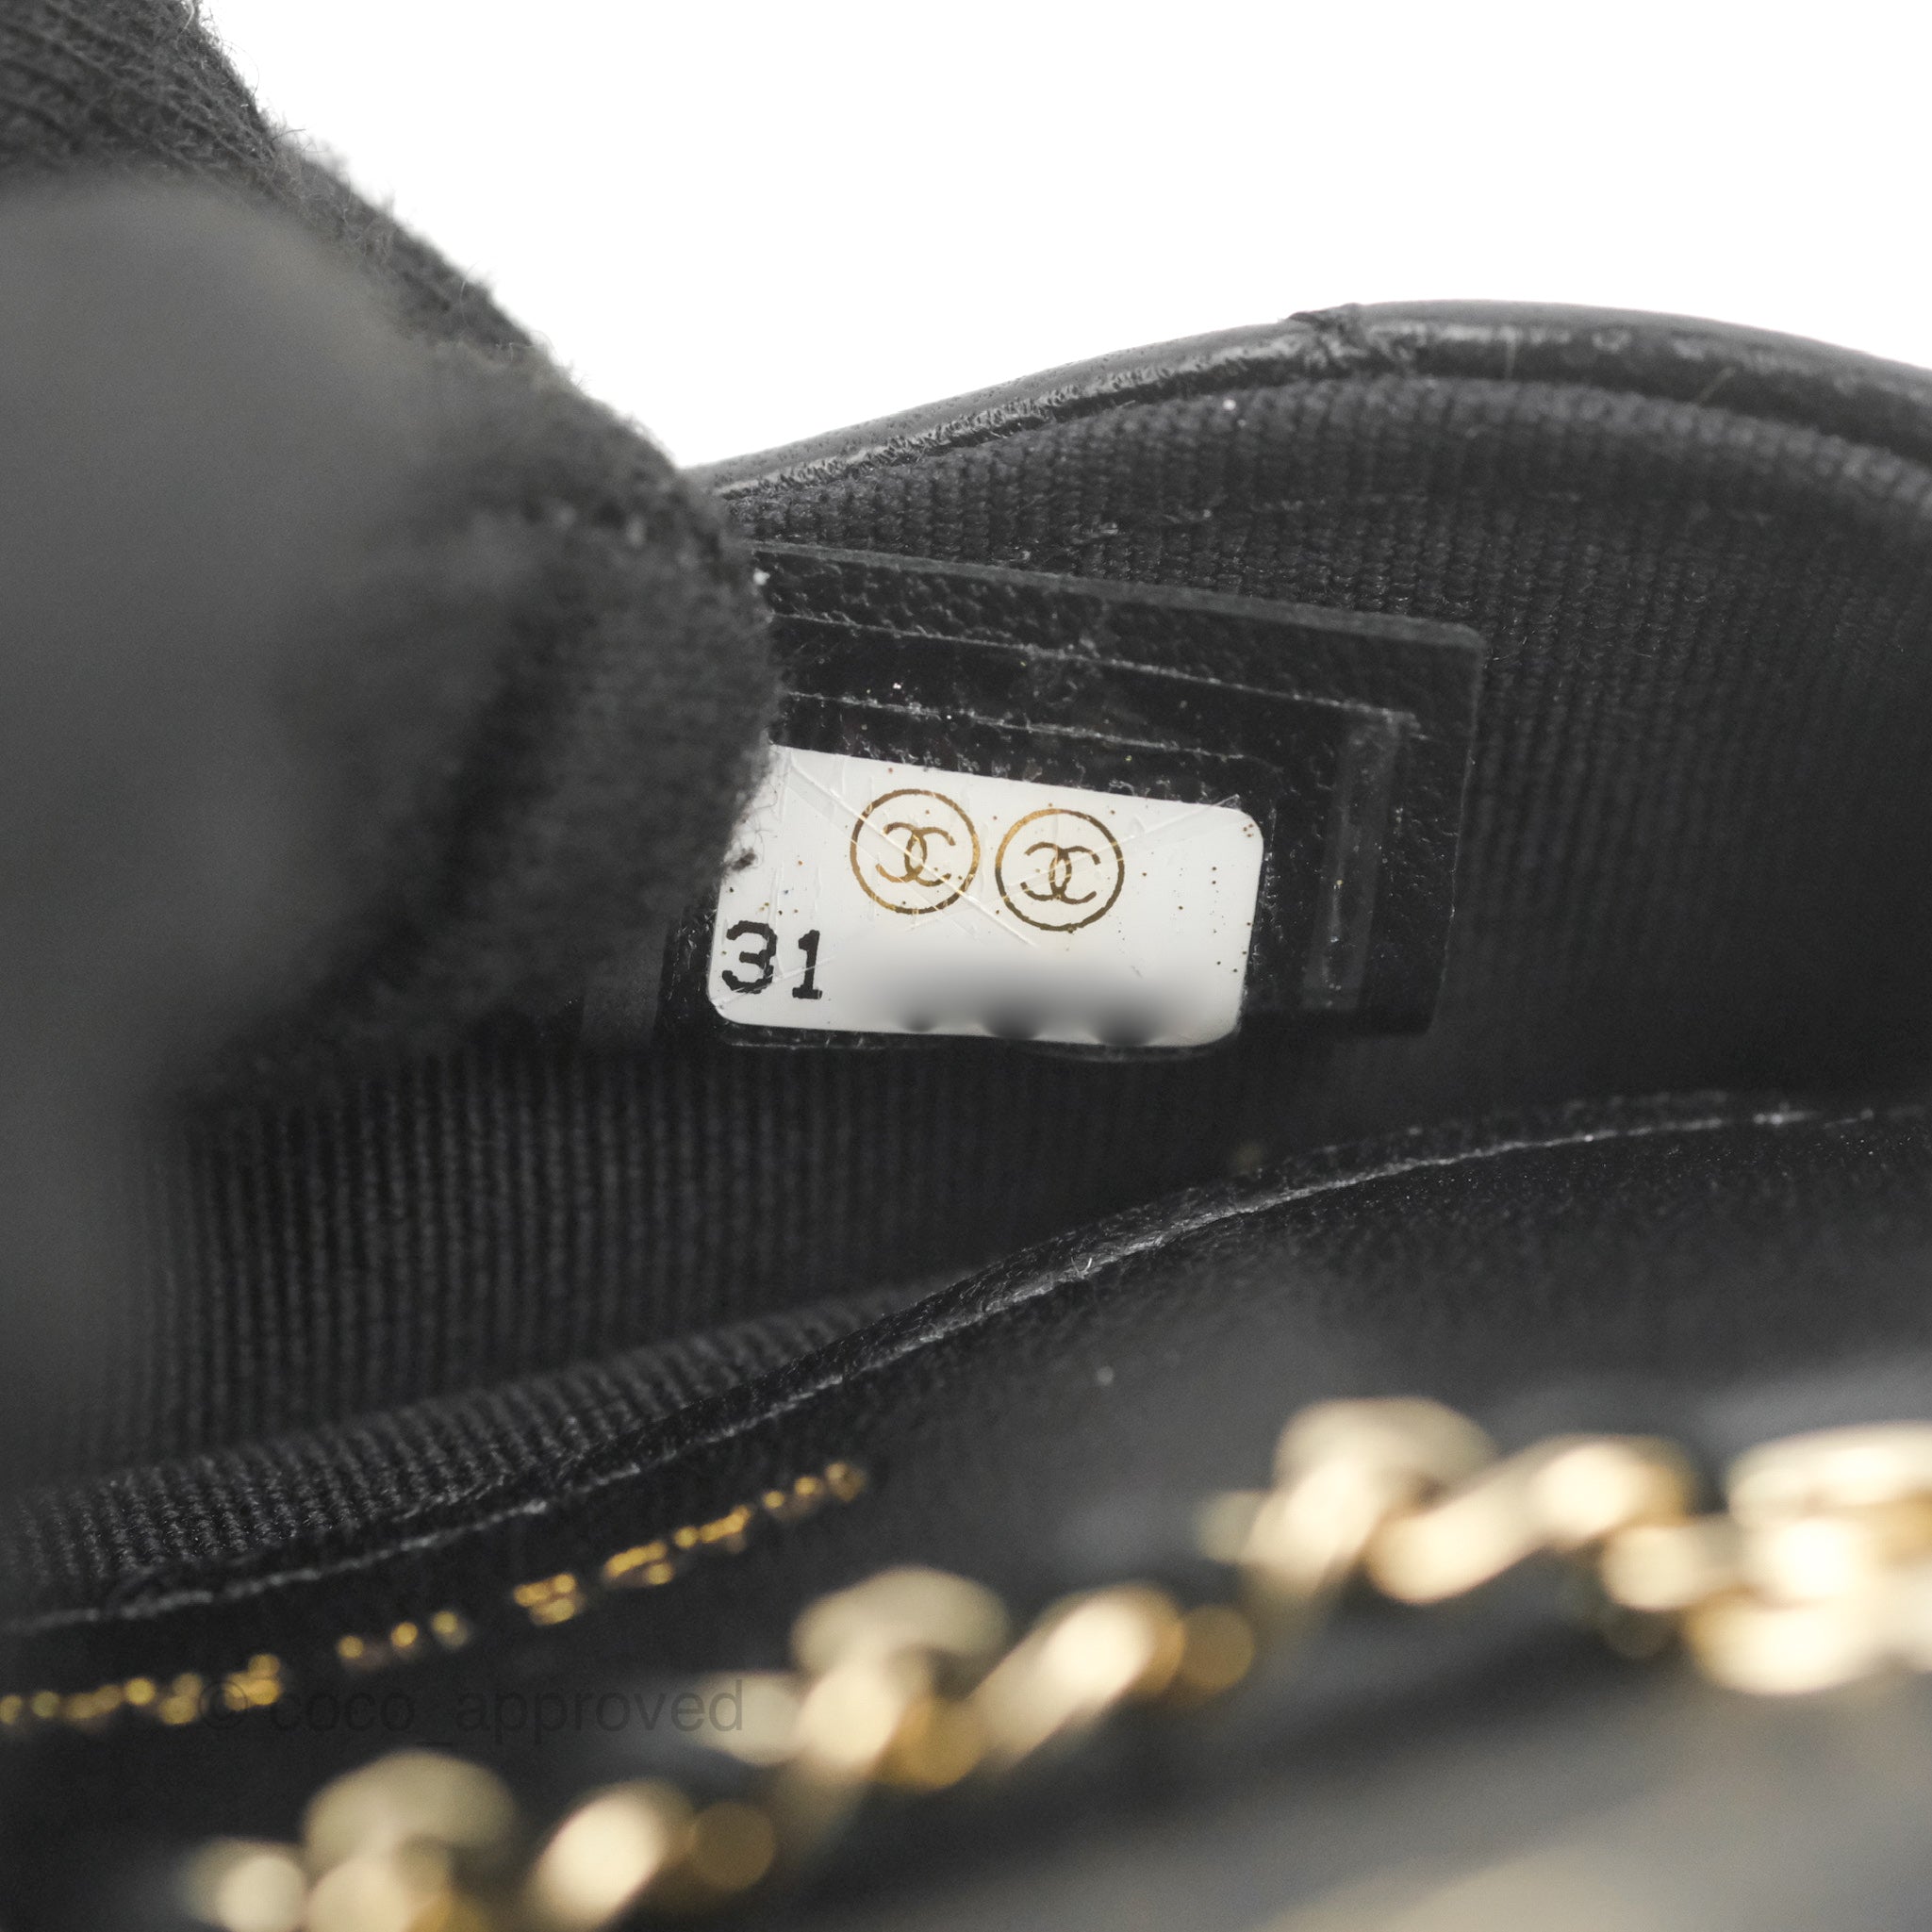 14 Cách phân biệt túi Chanel thật giả check code túi Chanel chuẩn